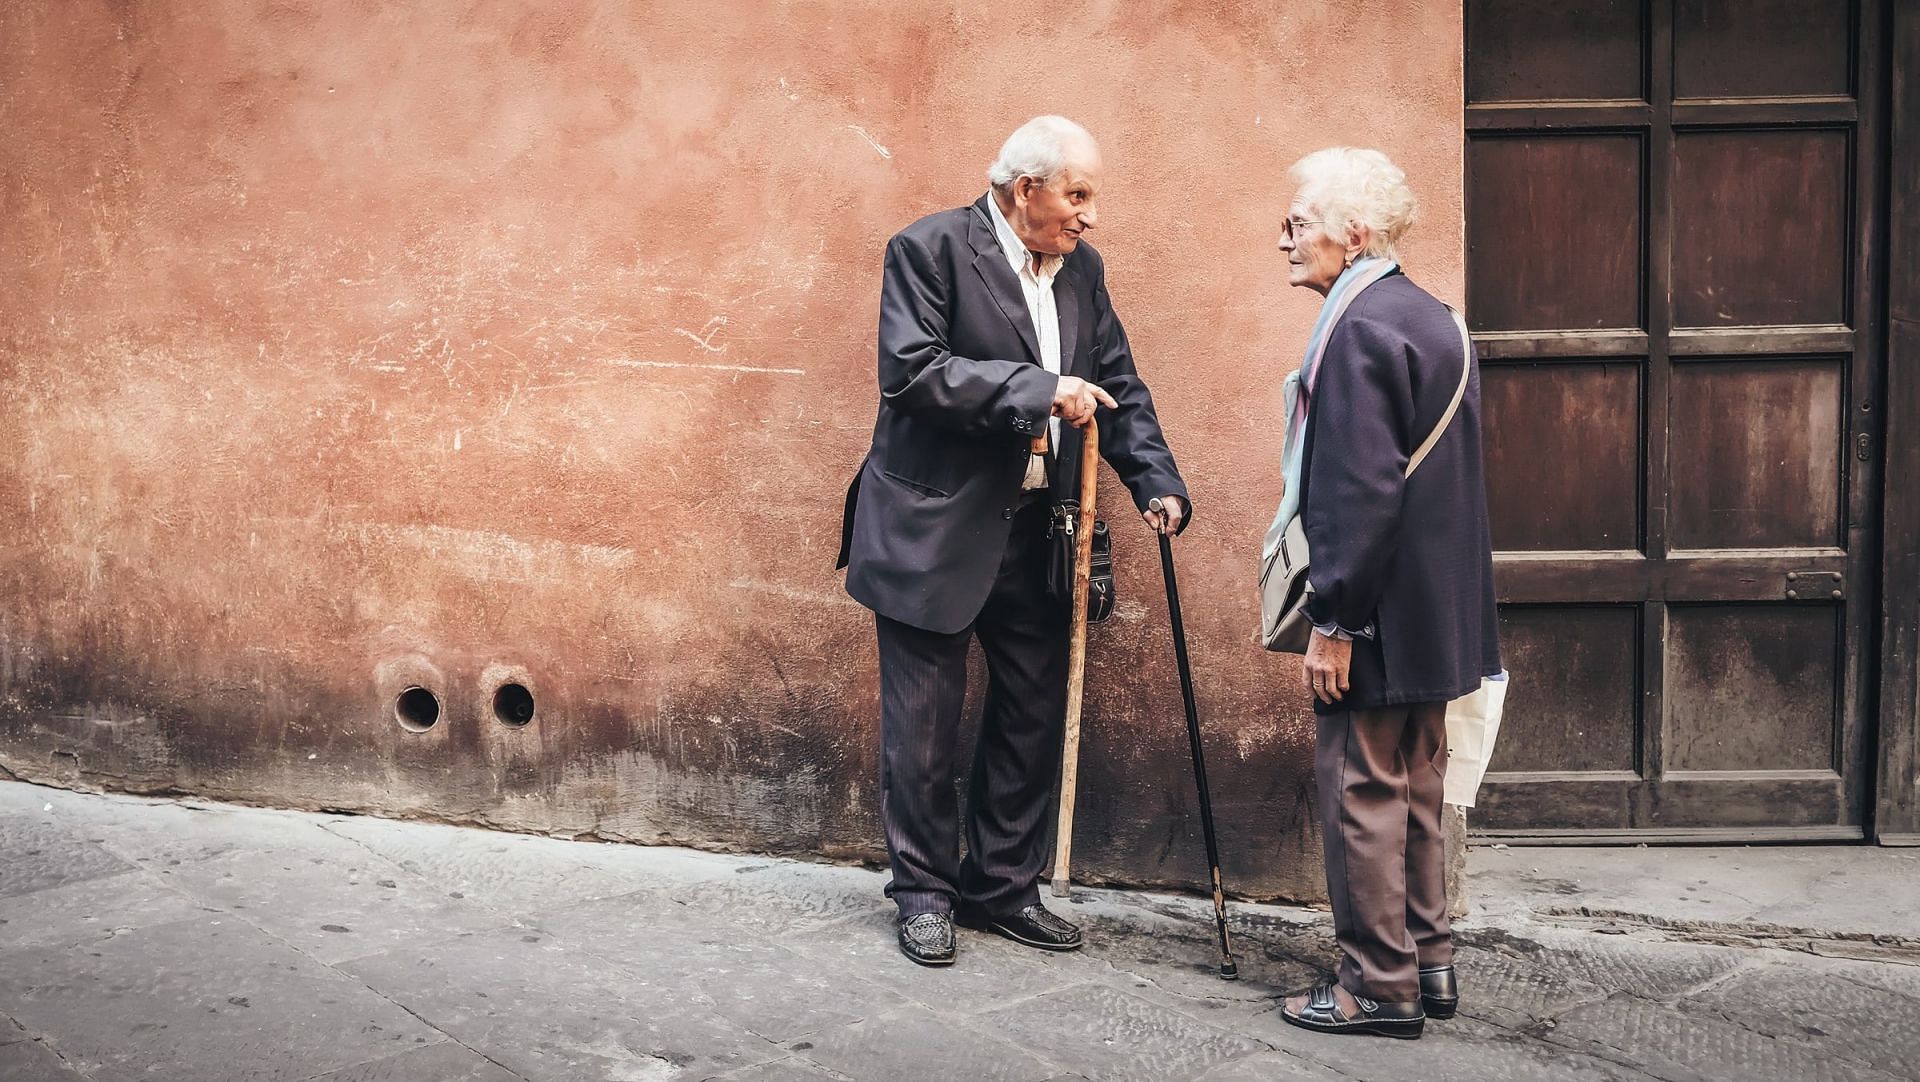 Balance exercise helps improve balance in visually impaired elderly. (Photo by Cristina Gottardi on Unsplash)